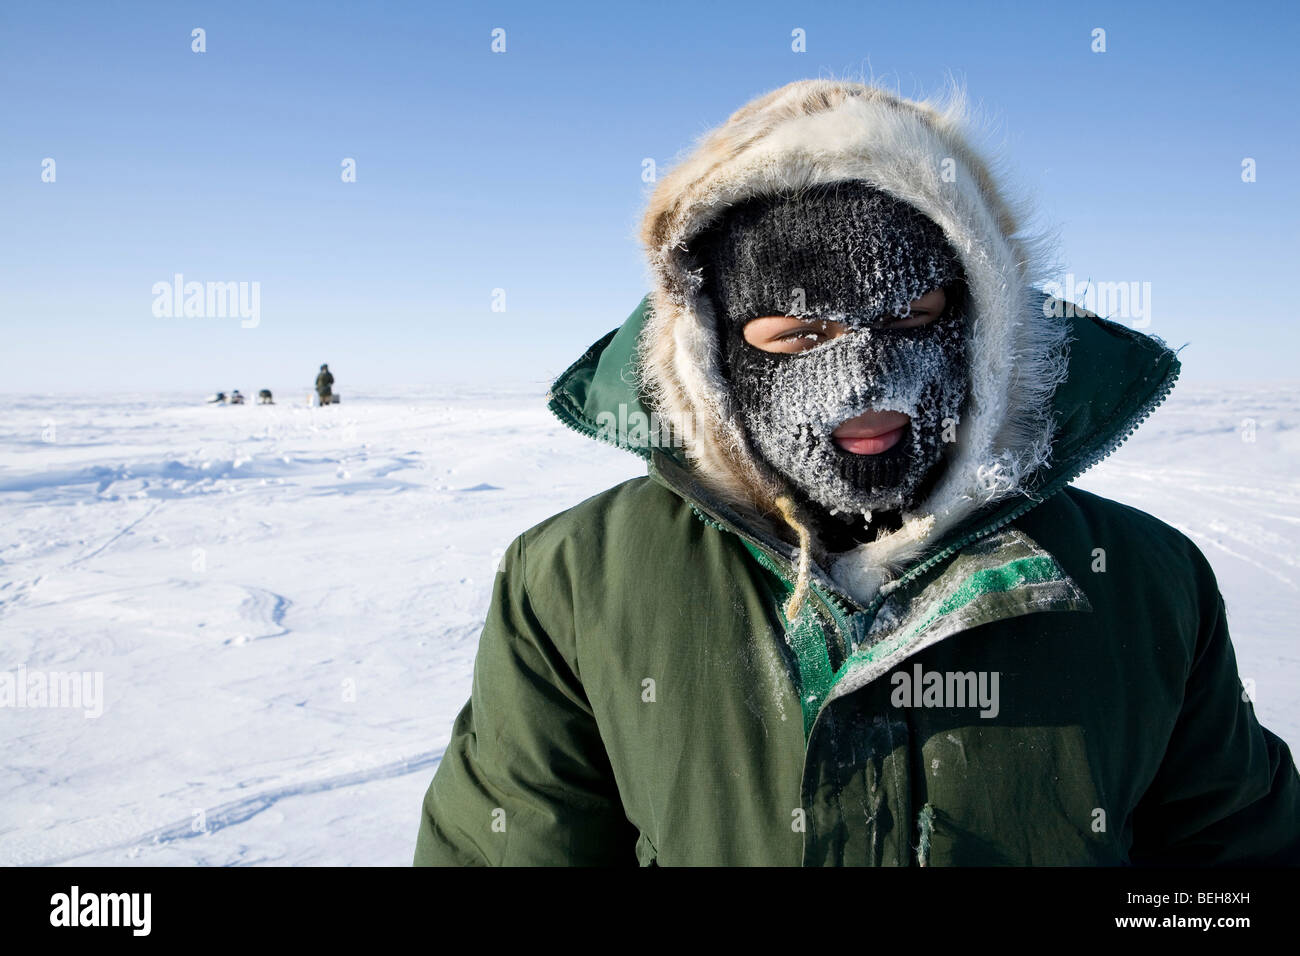 Ritratto di un Inuk. Gojahaven è una città nell'estremo nord del canada, dove vivono 1000 Inuits. Foto Stock